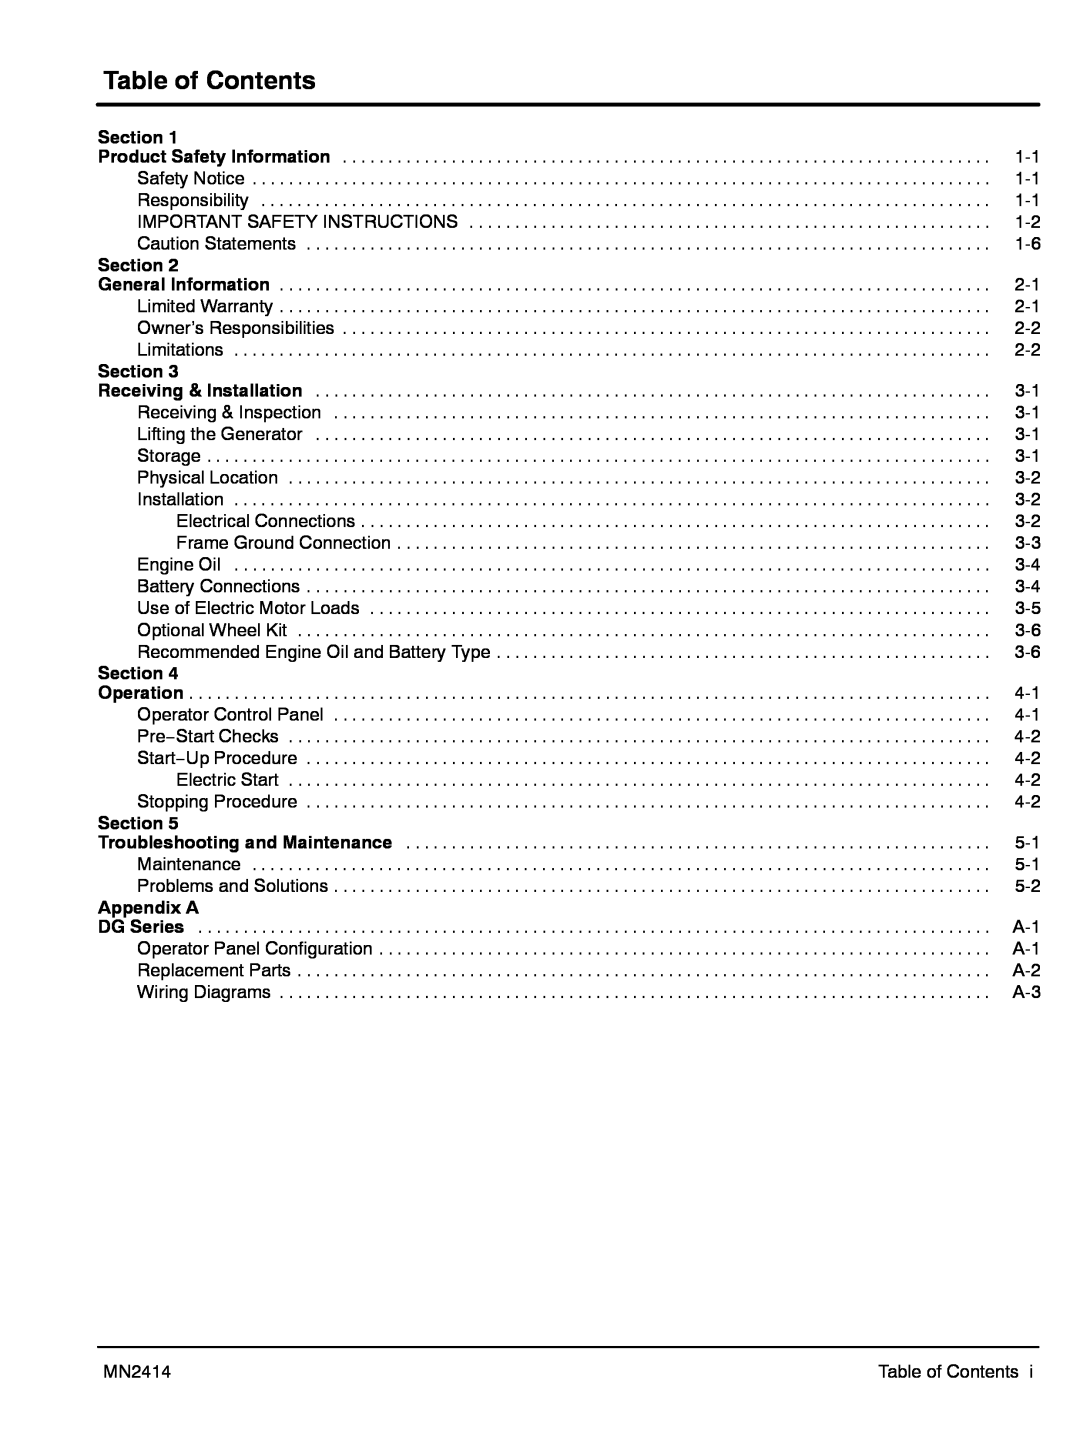 Baldor DG6E, DG3E manual Table of Contents, MN2414 